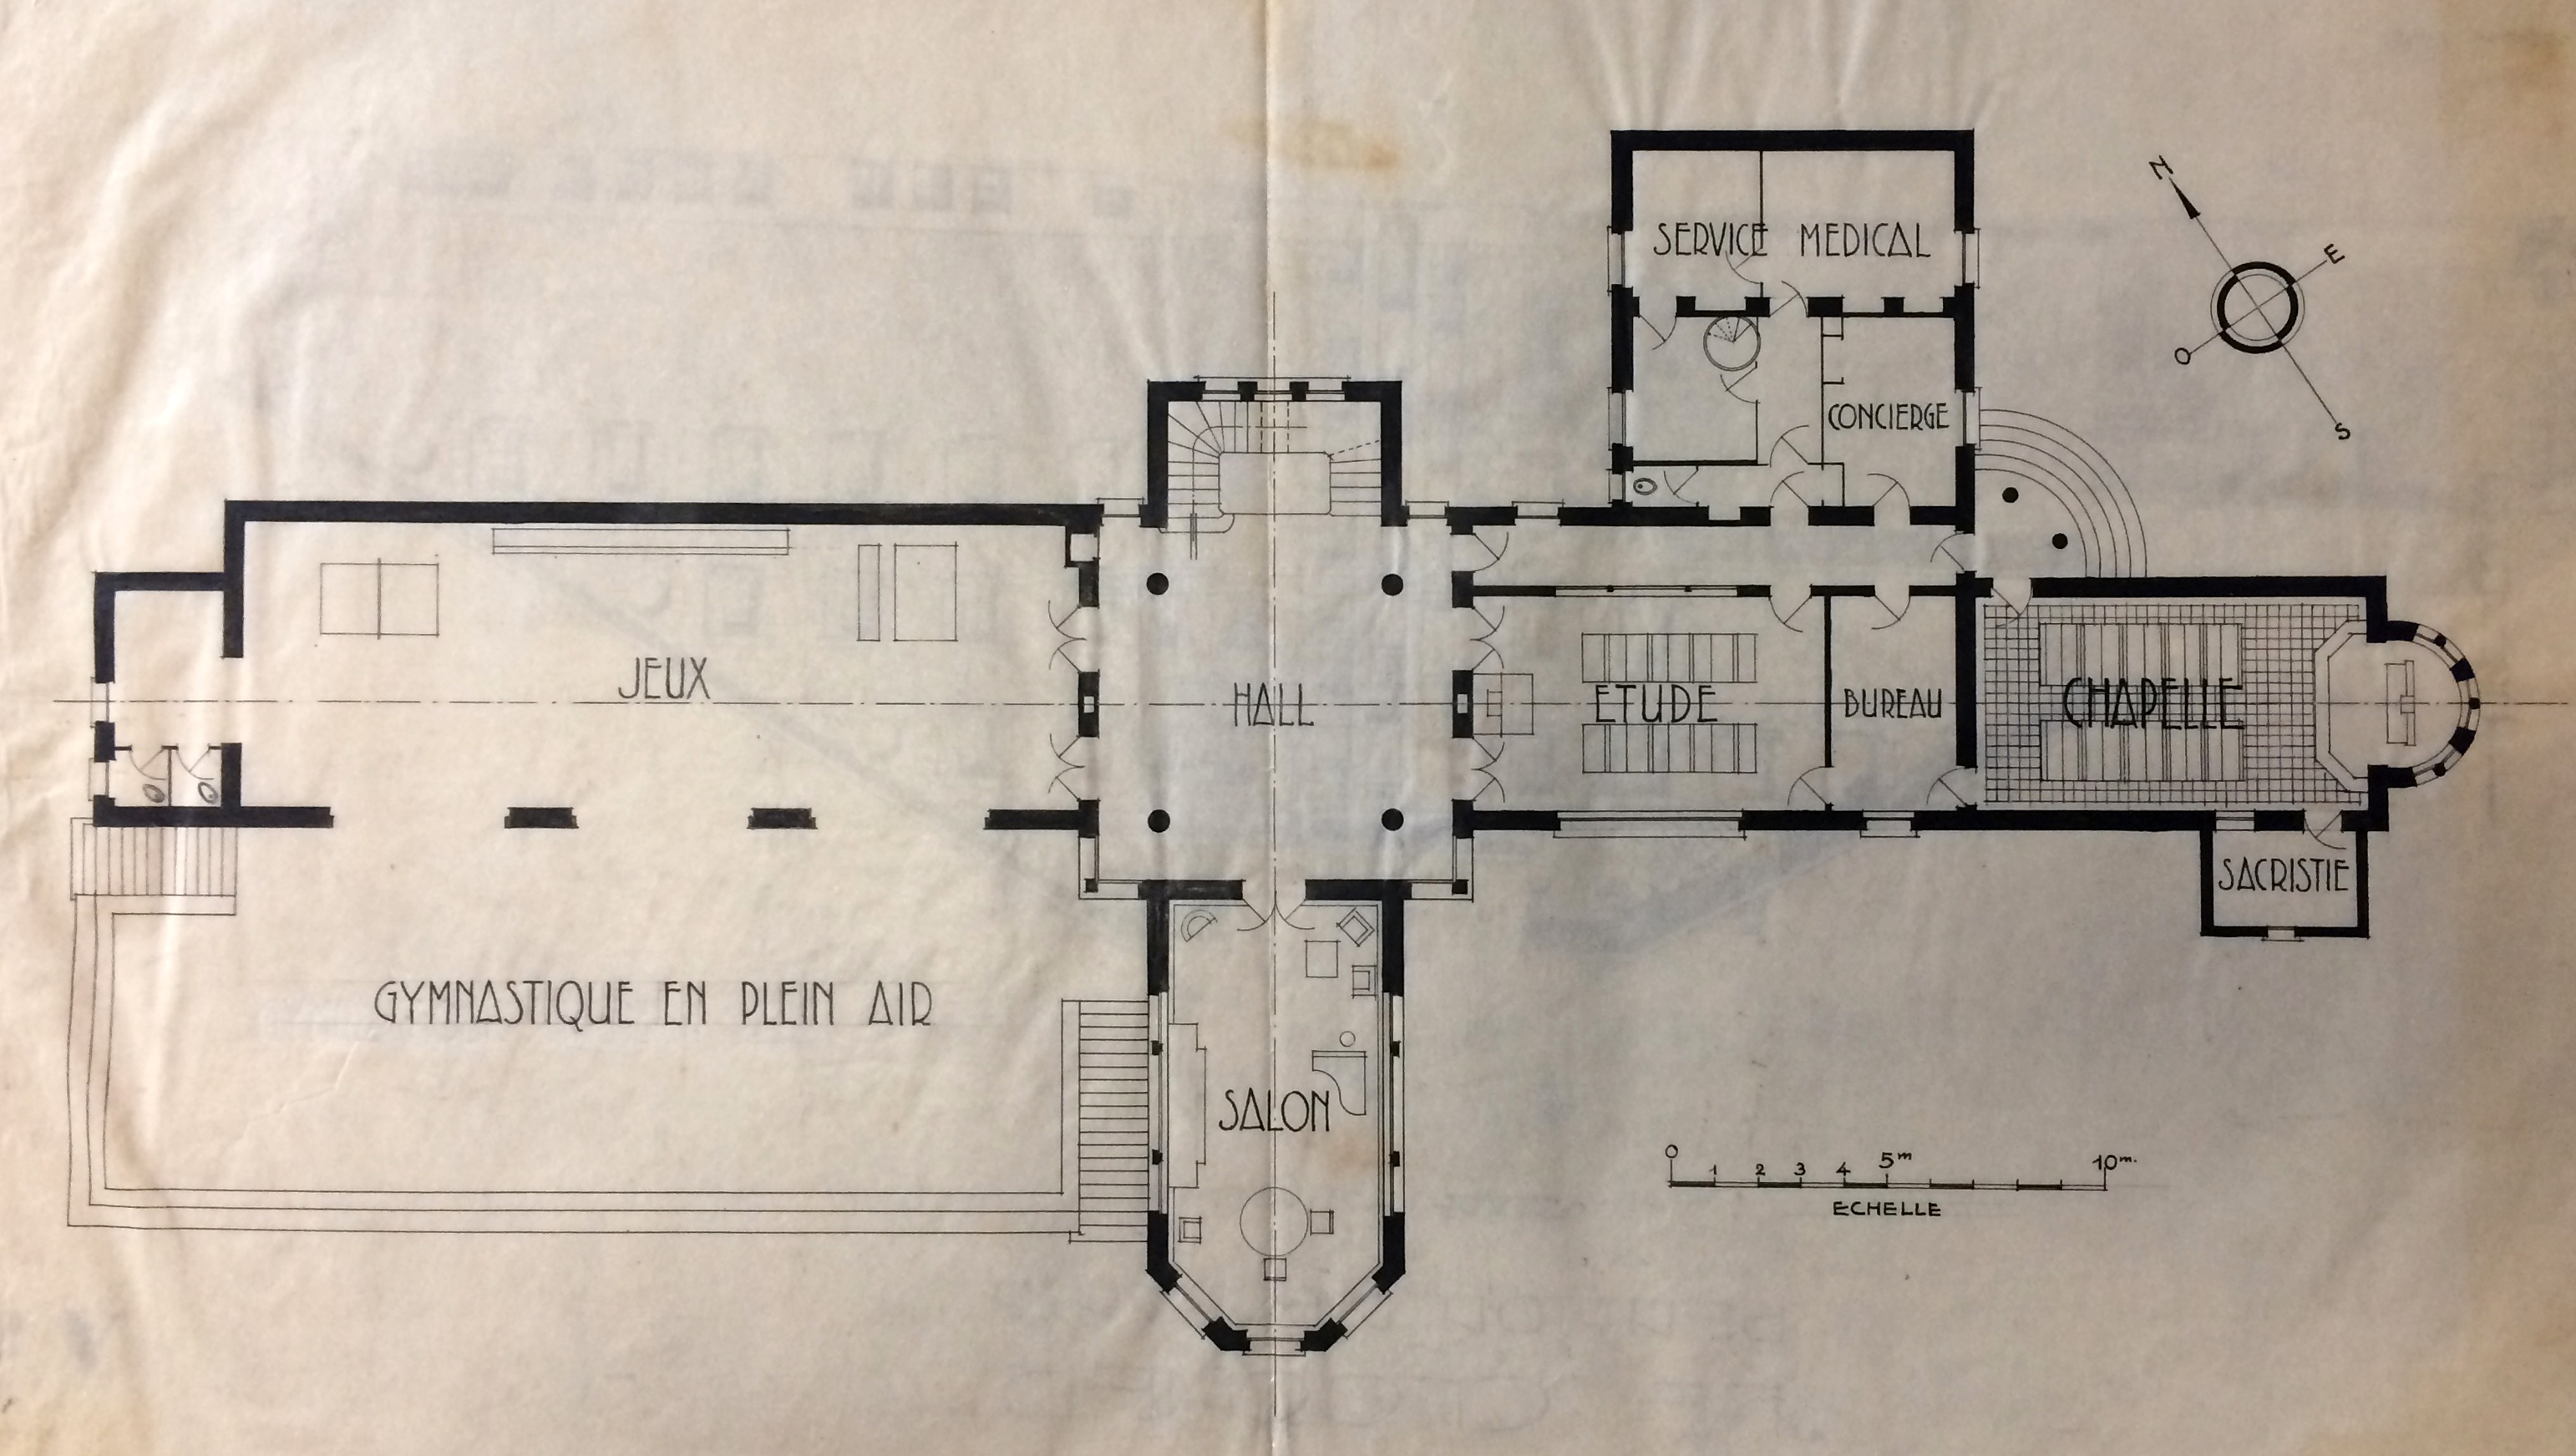 La maison d’enfants Le Clocher, le plan du rez-de-chaussée, Pouradier-Duteil architecte (ADI 86 J 12).